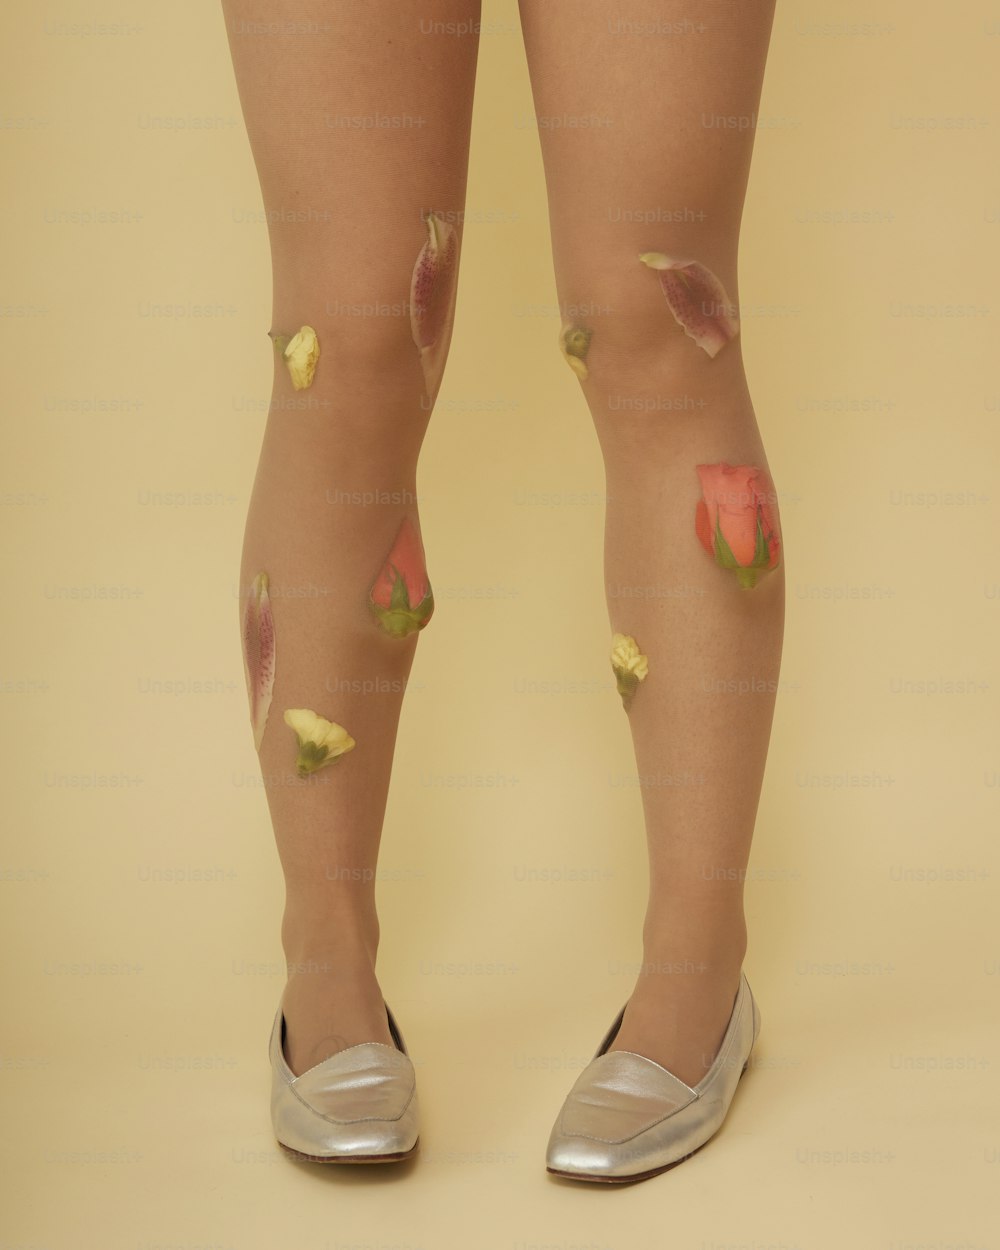 les jambes d’une femme avec des taches de peinture dessus;